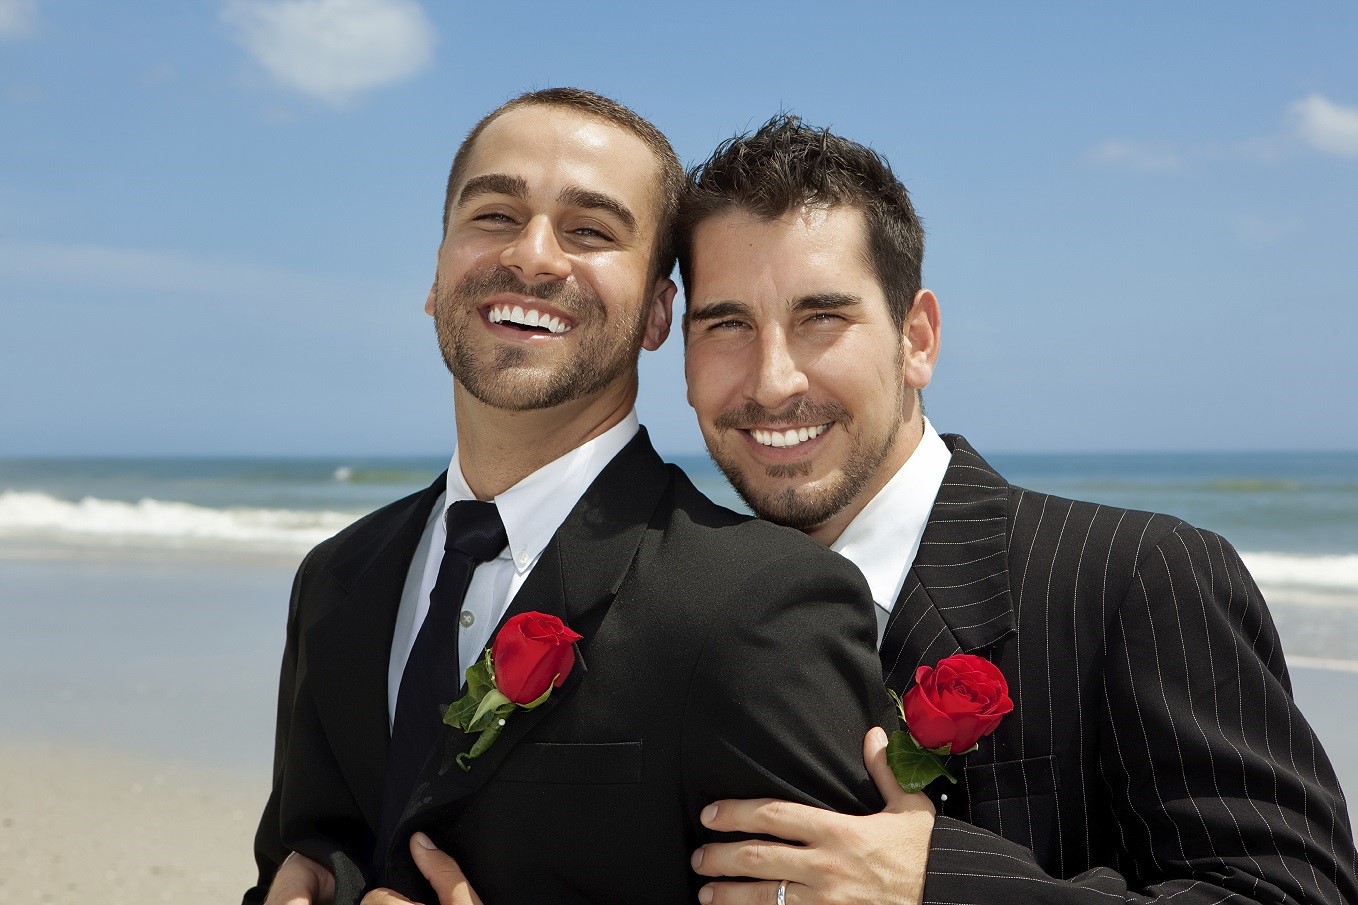 جمعية "شمس": أول اعتراف بزواج مثلي في تونس وإدراجه بمضمون ولادة